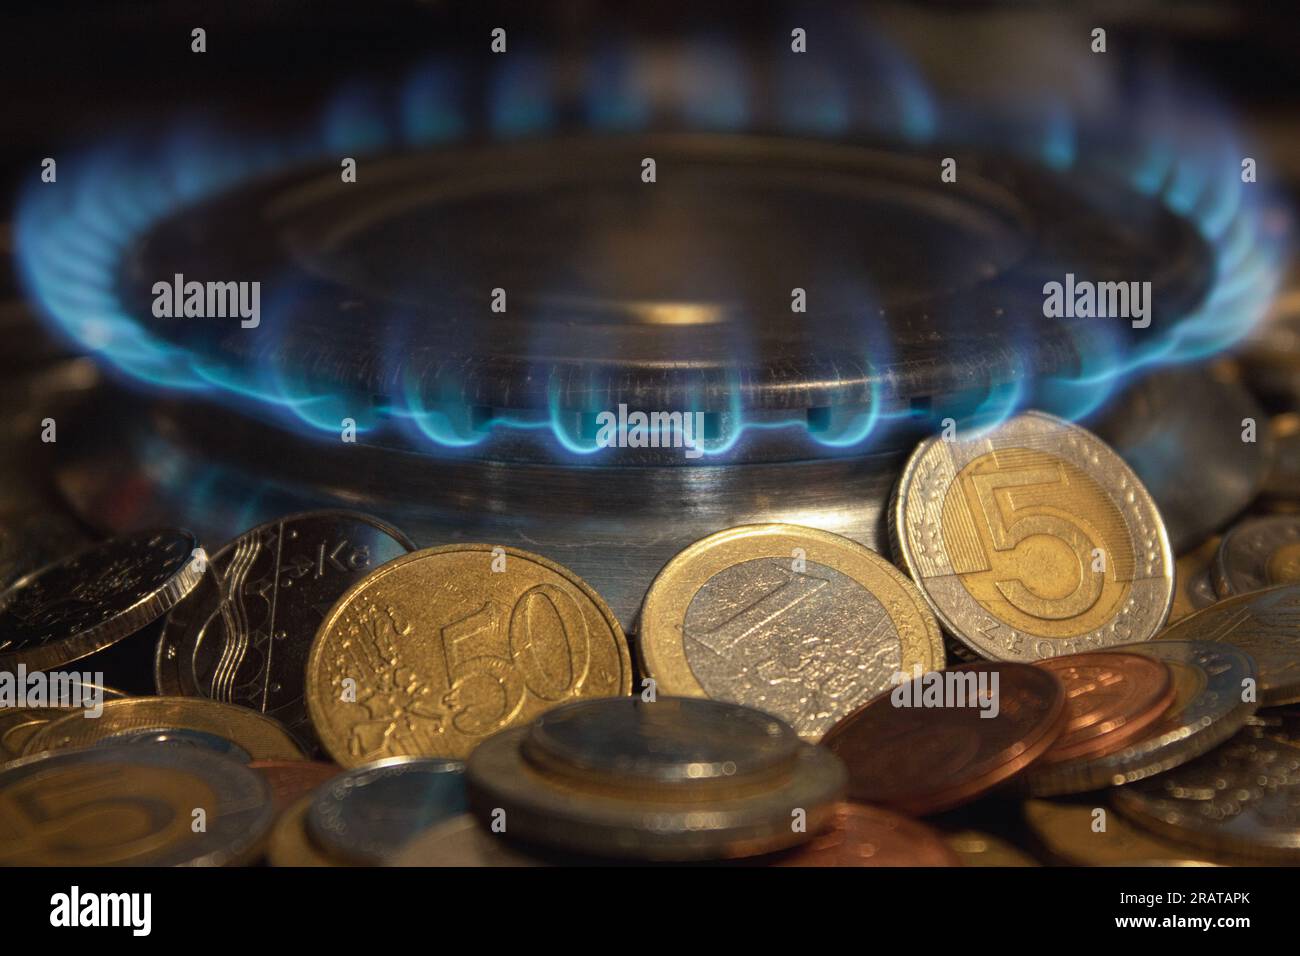 Flamme d'un brûleur à gaz, sur fond de pièces de monnaie. Concept. Augmentation des tarifs. Gaz coûteux, augmentation du prix du gaz. Un symbole de la hausse des prix du gaz Banque D'Images